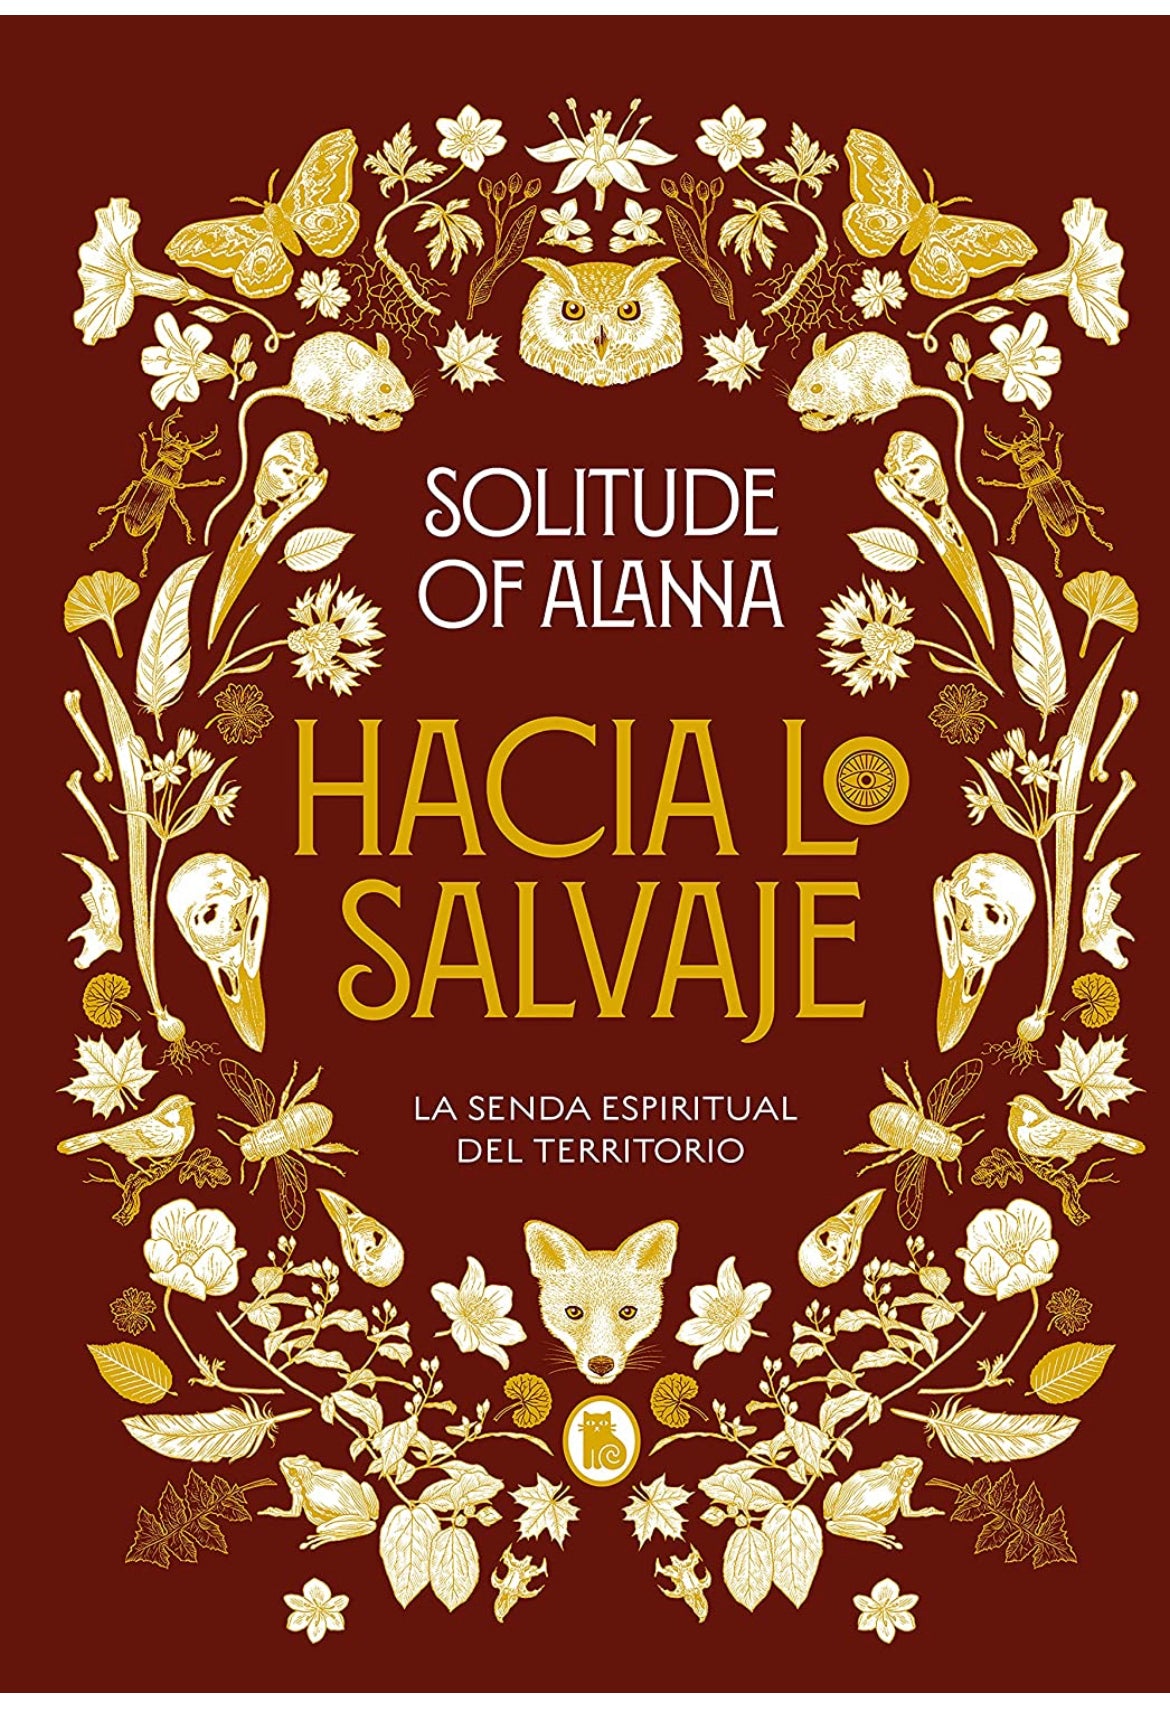 Hacia lo salvaje - Solitude of Alanna - GreenWitchArt